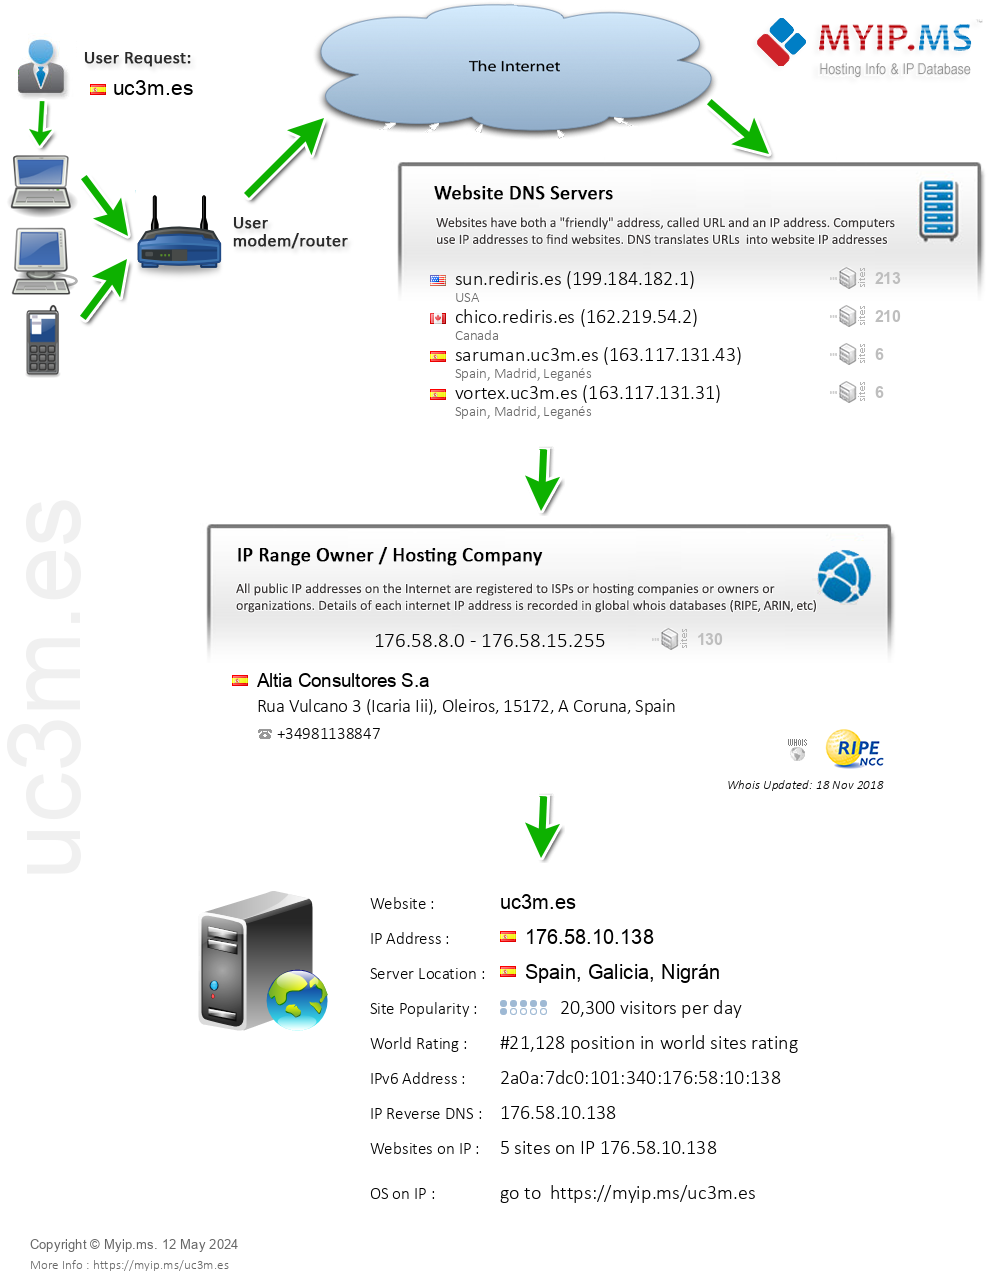 Uc3m.es - Website Hosting Visual IP Diagram